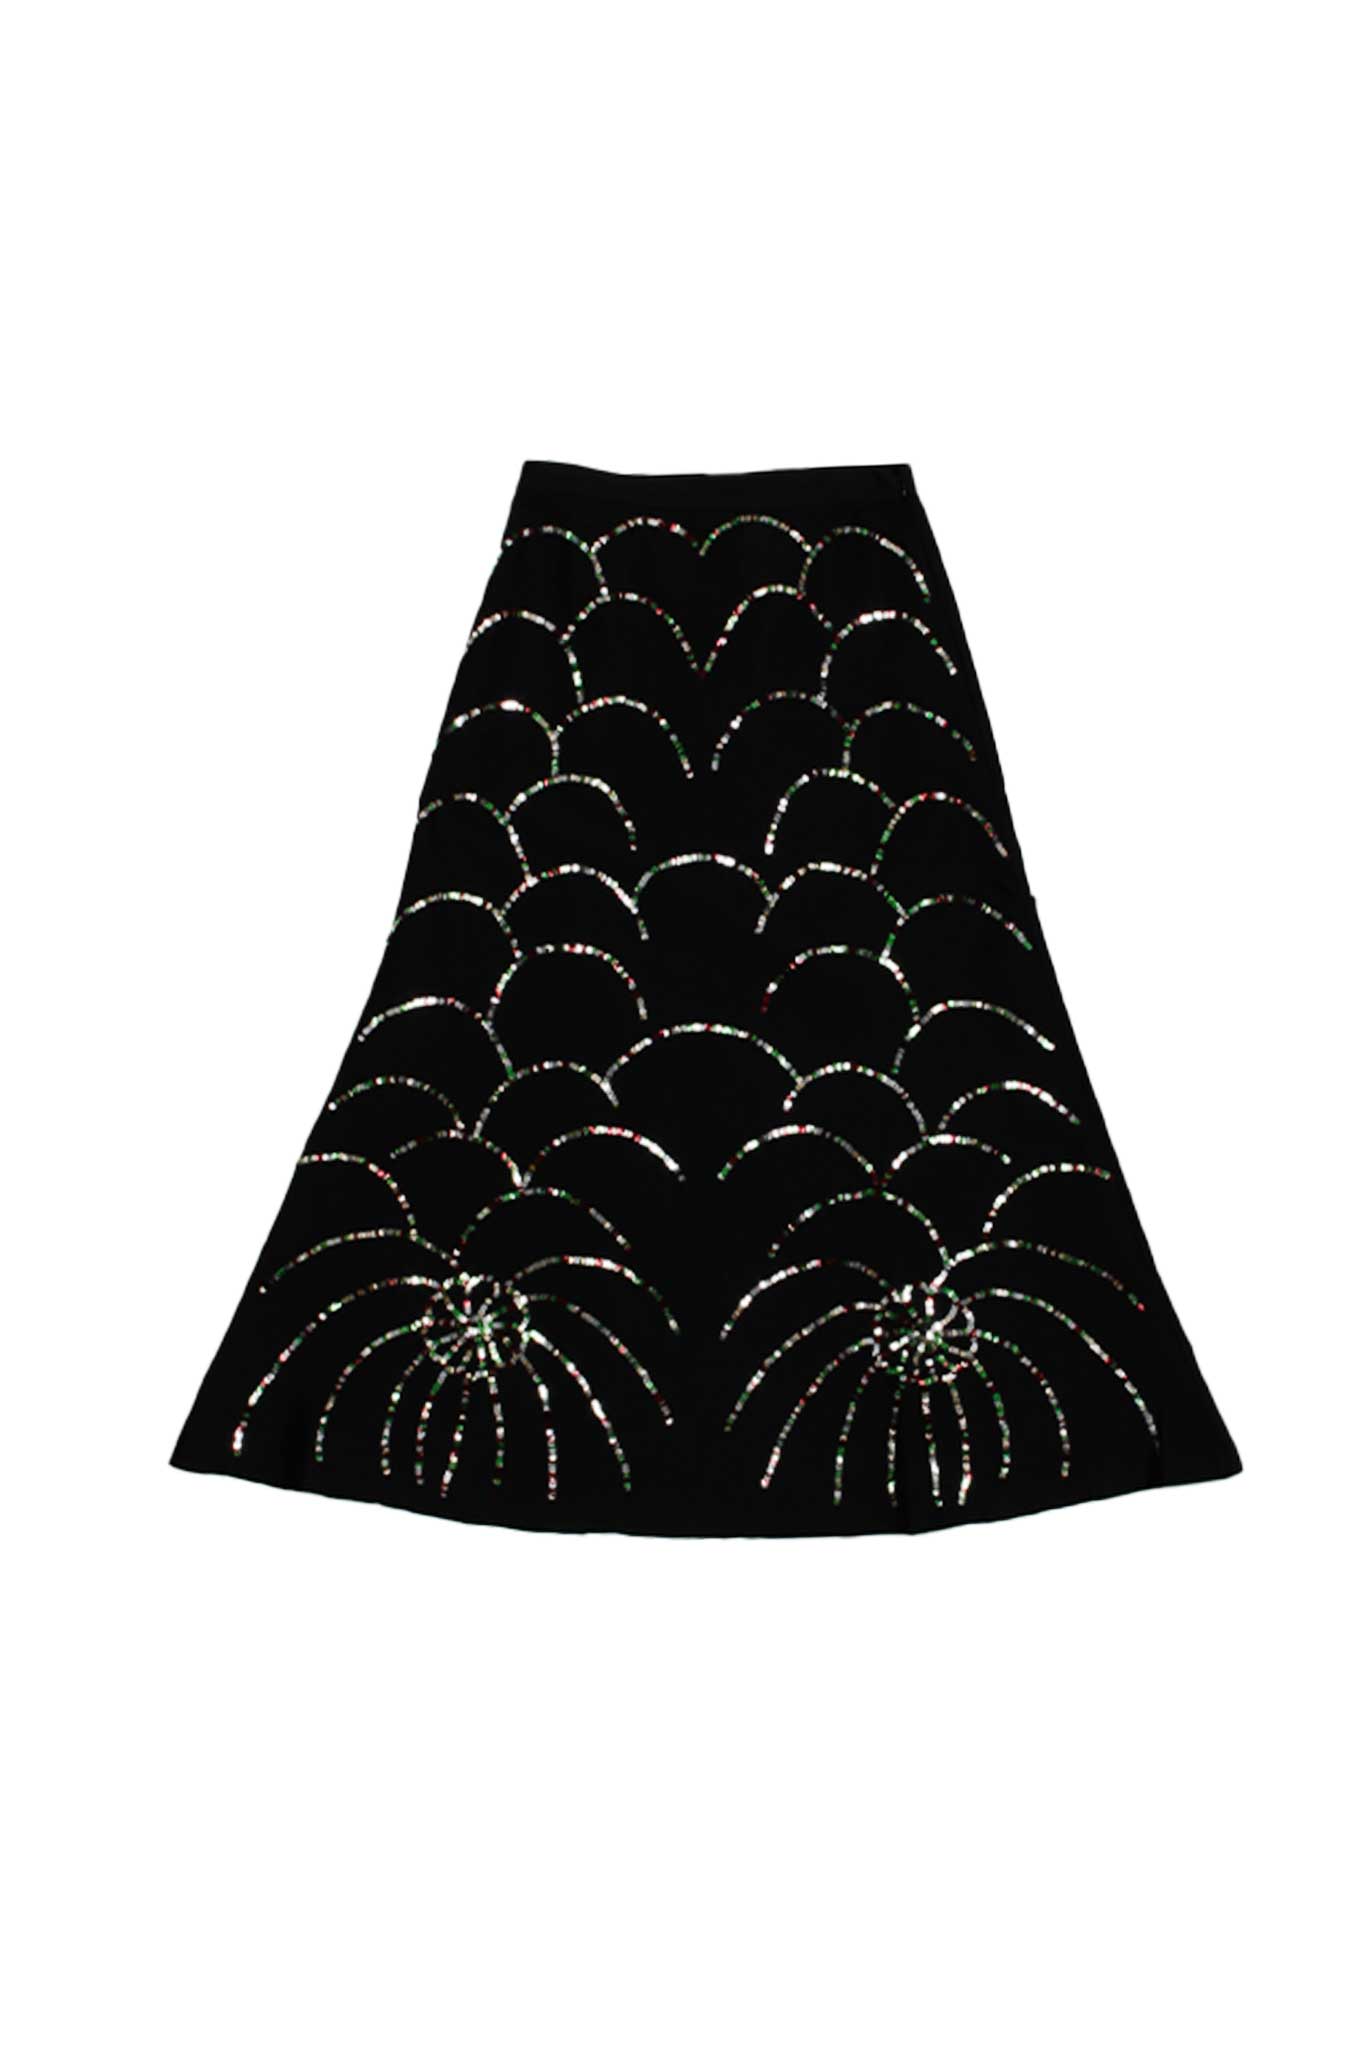 Alison Skirt in Firework Sequins